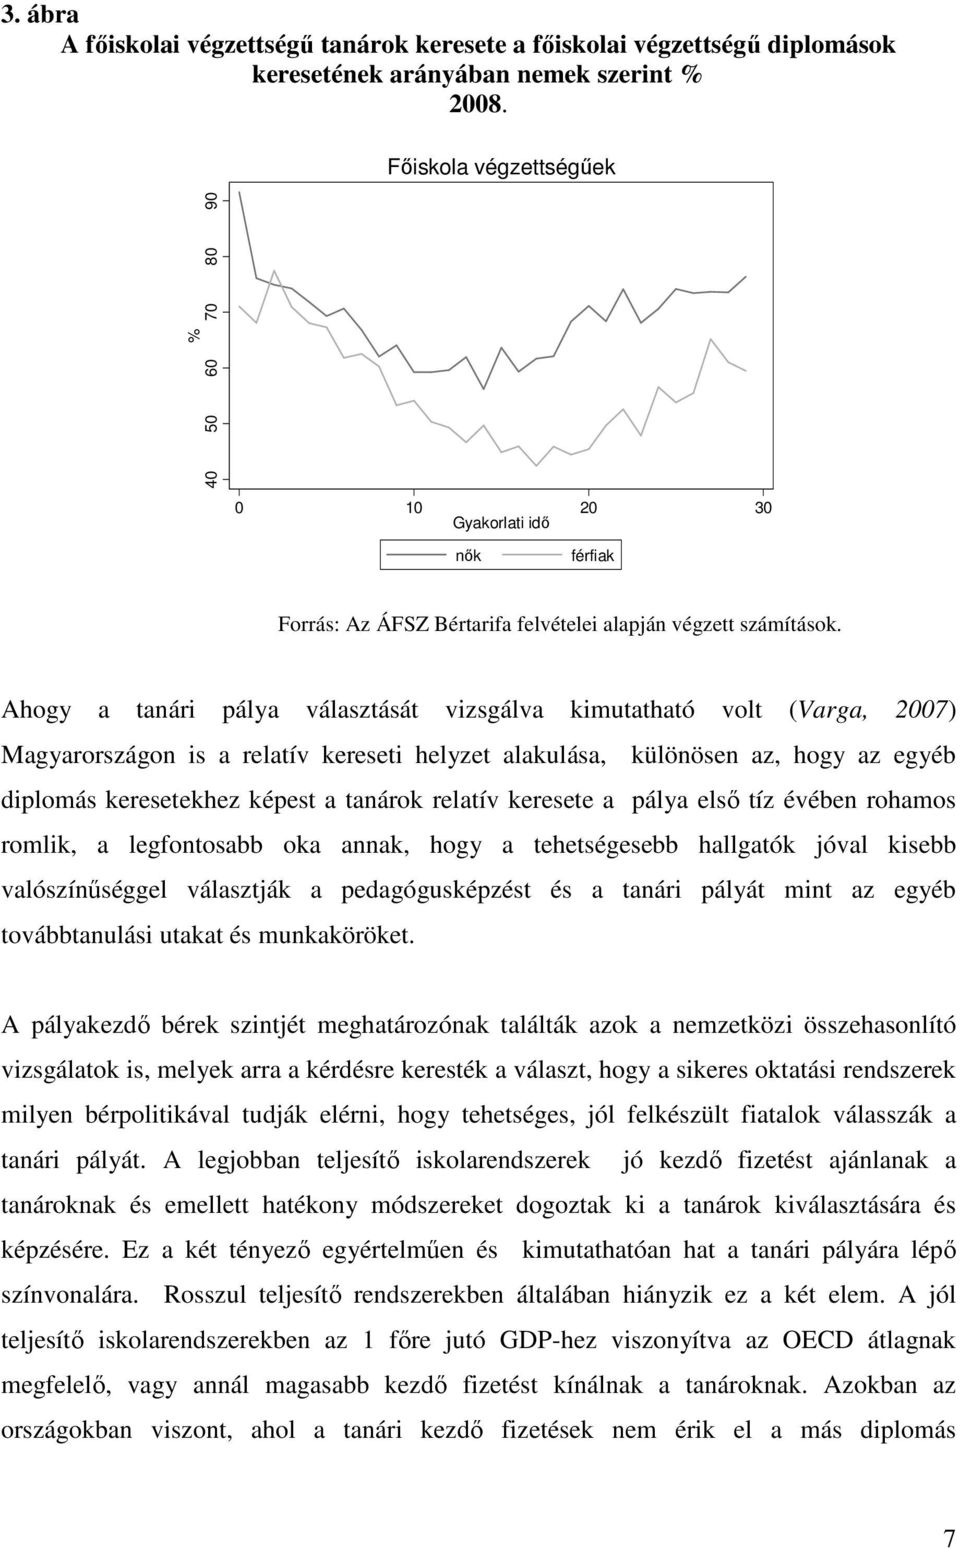 Ahogy a tanári pálya választását vizsgálva kimutatható volt (Varga, 2007) Magyarországon is a relatív kereseti helyzet alakulása, különösen az, hogy az egyéb diplomás keresetekhez képest a tanárok